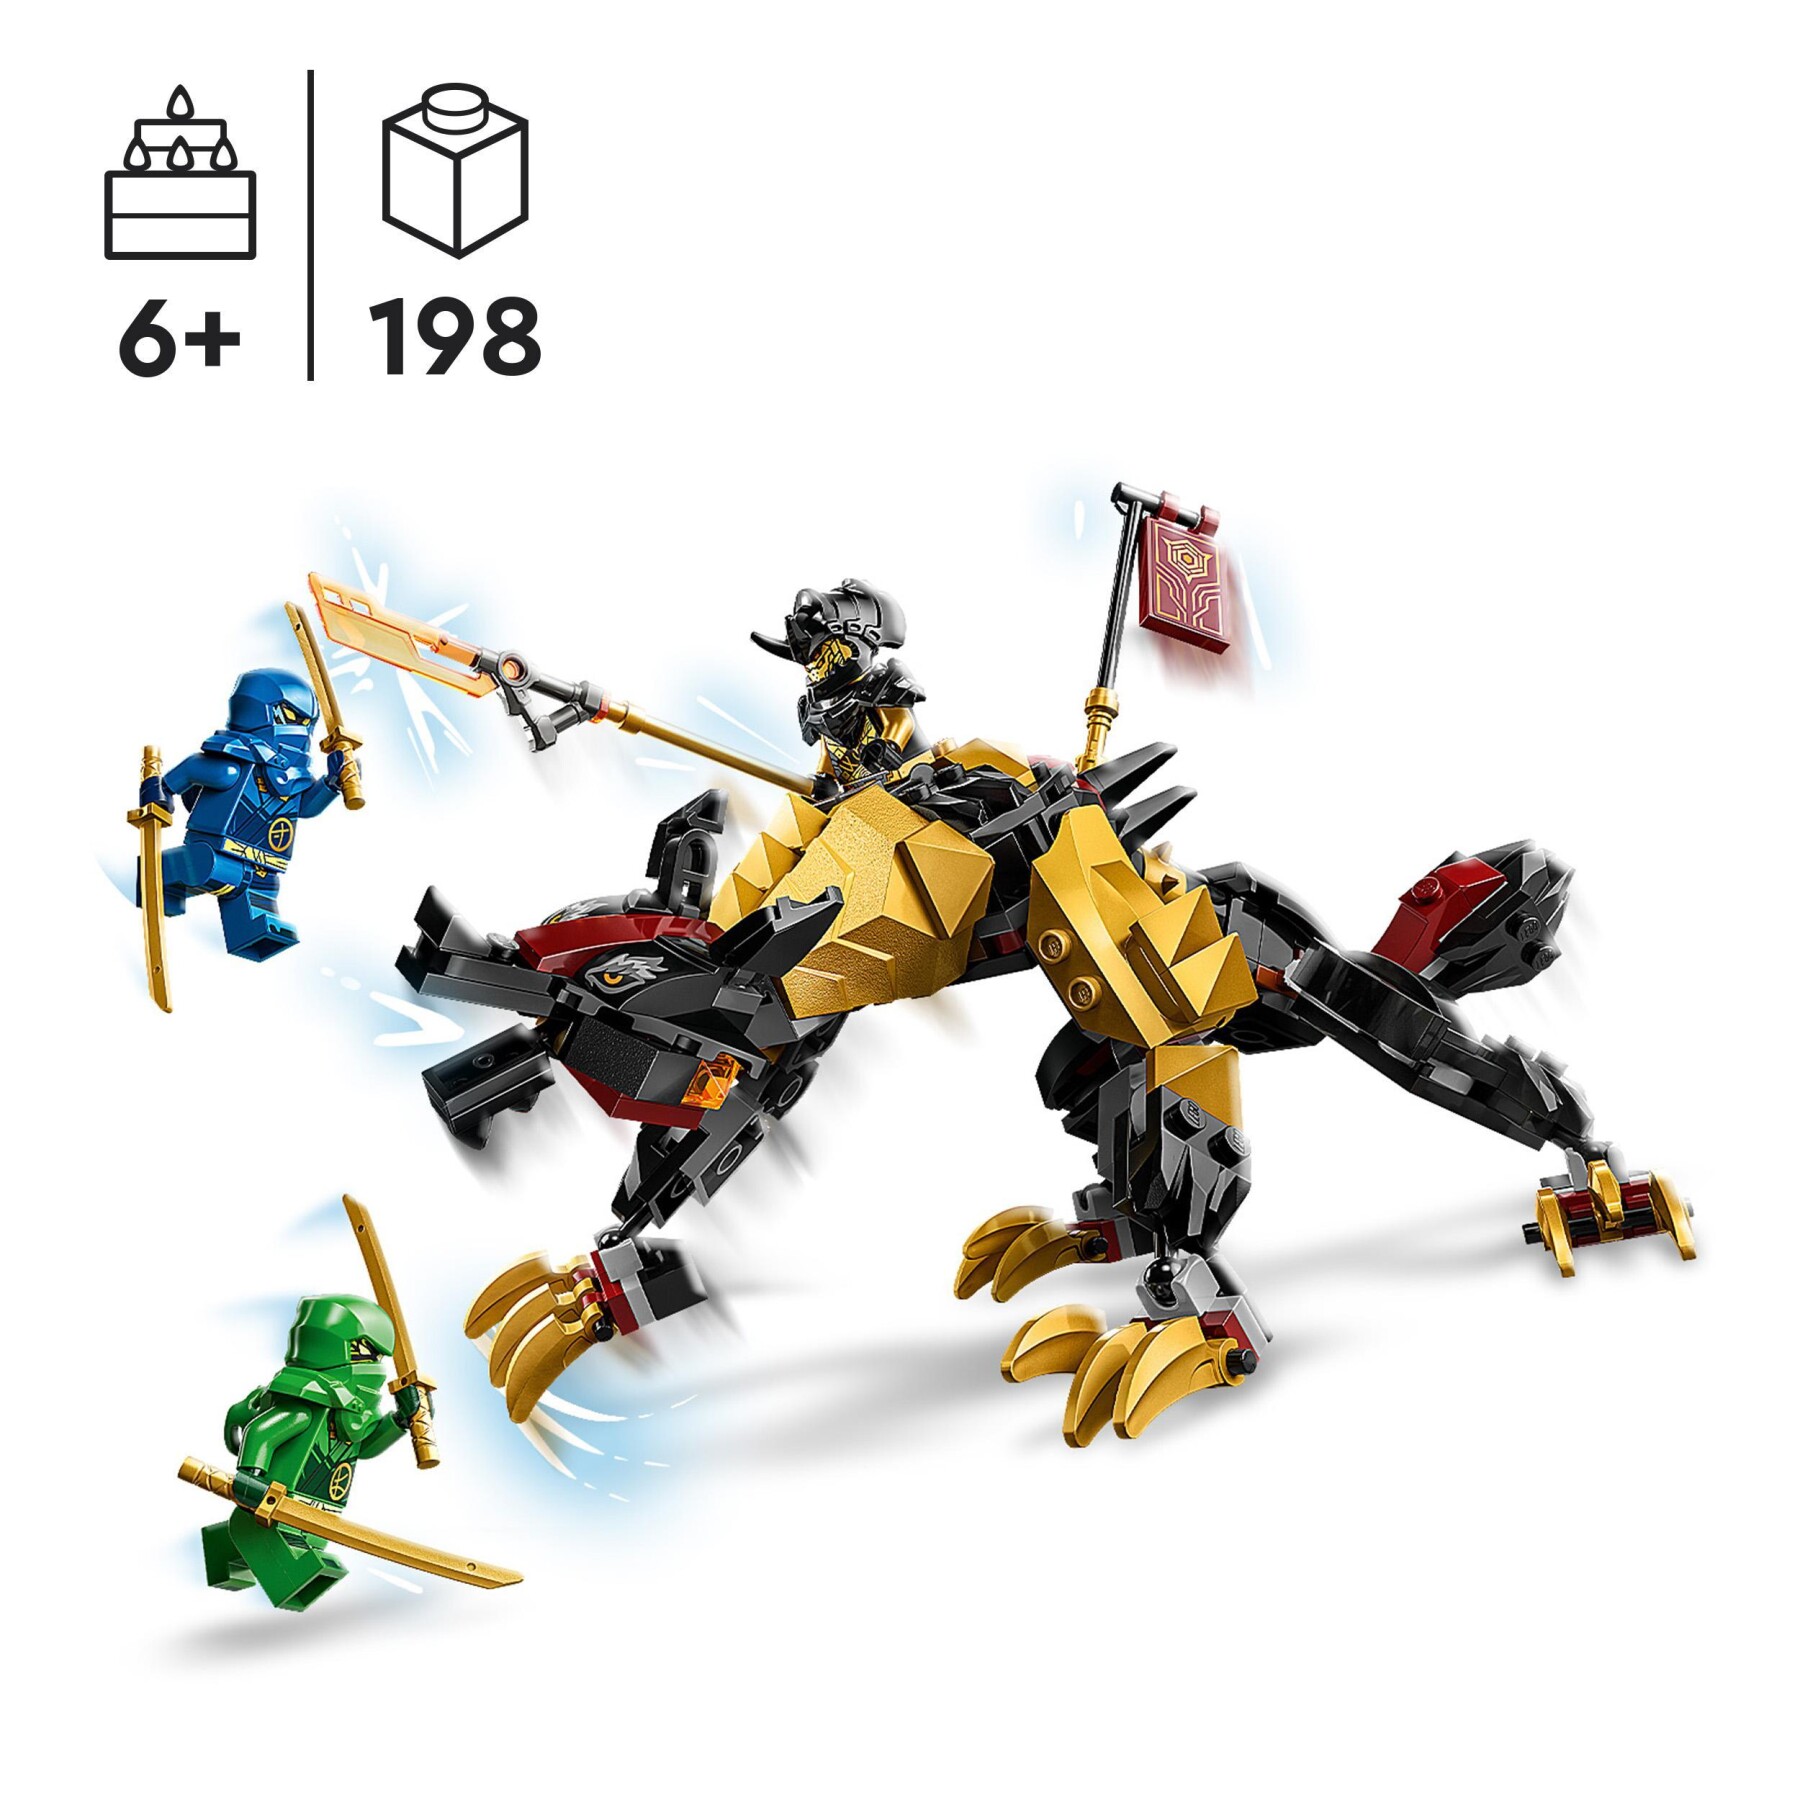 Lego ninjago 71790 cavaliere del drago cacciatore imperium, mostro giocattolo con 3 minifigure, giochi per bambini 6+ anni - LEGO NINJAGO